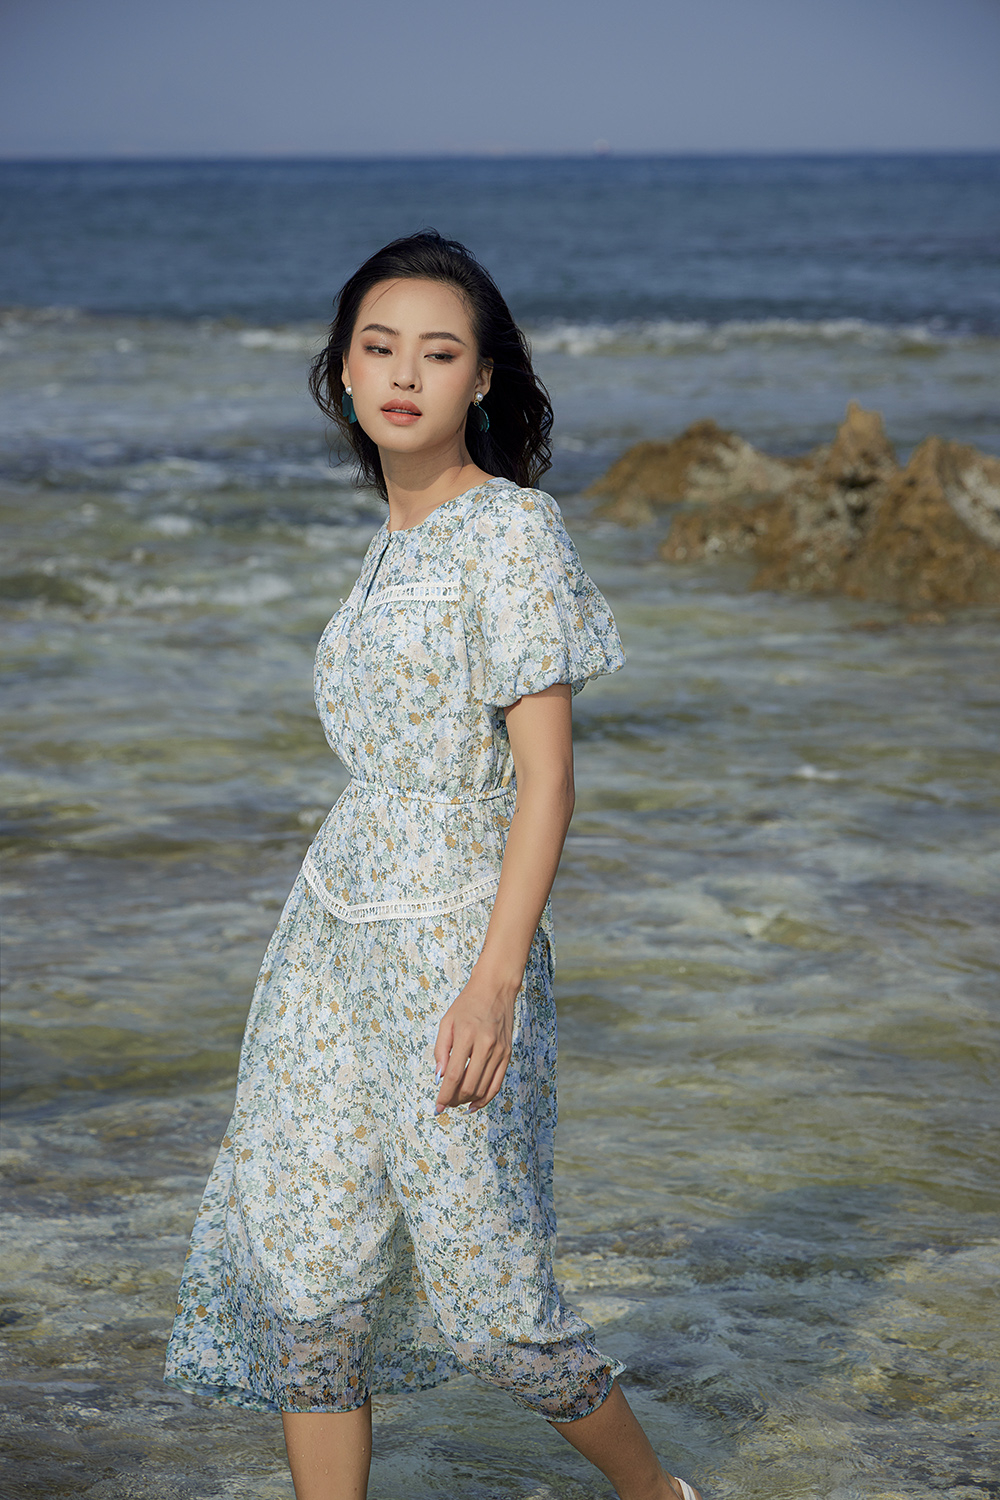 Tuyển chọn 999 mẫu váy hoa nhí đi biển được yêu thích nhất!